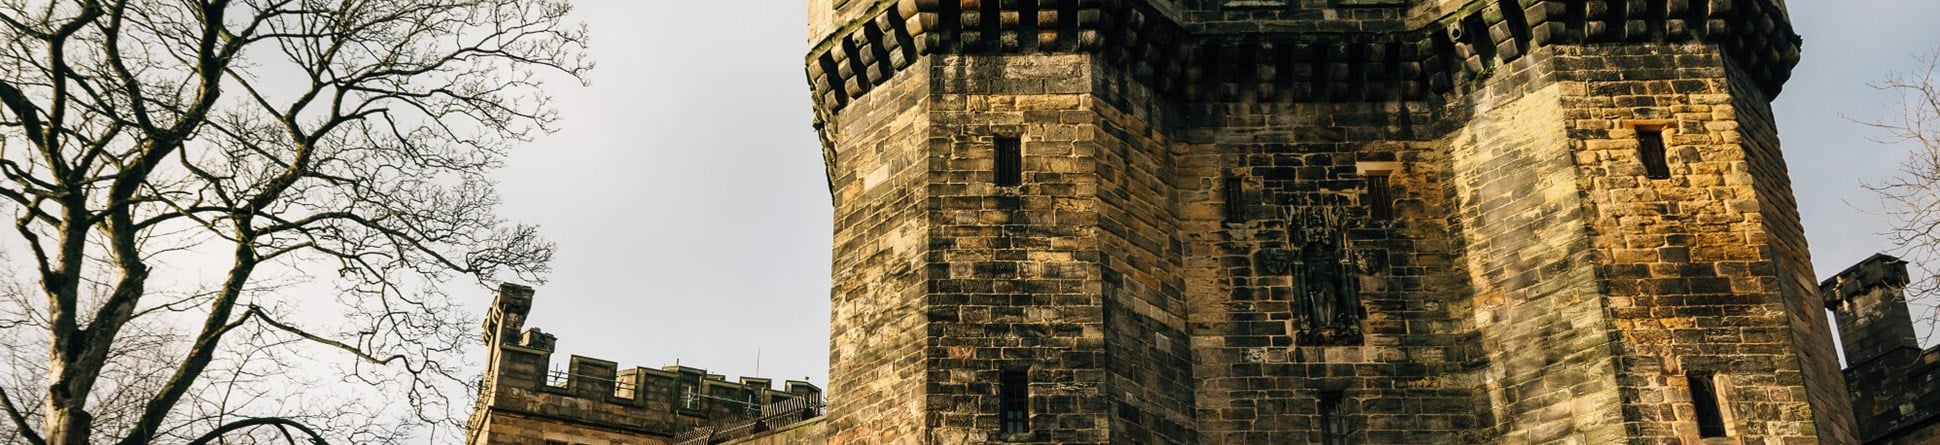 Rear view of Lancaster Castle